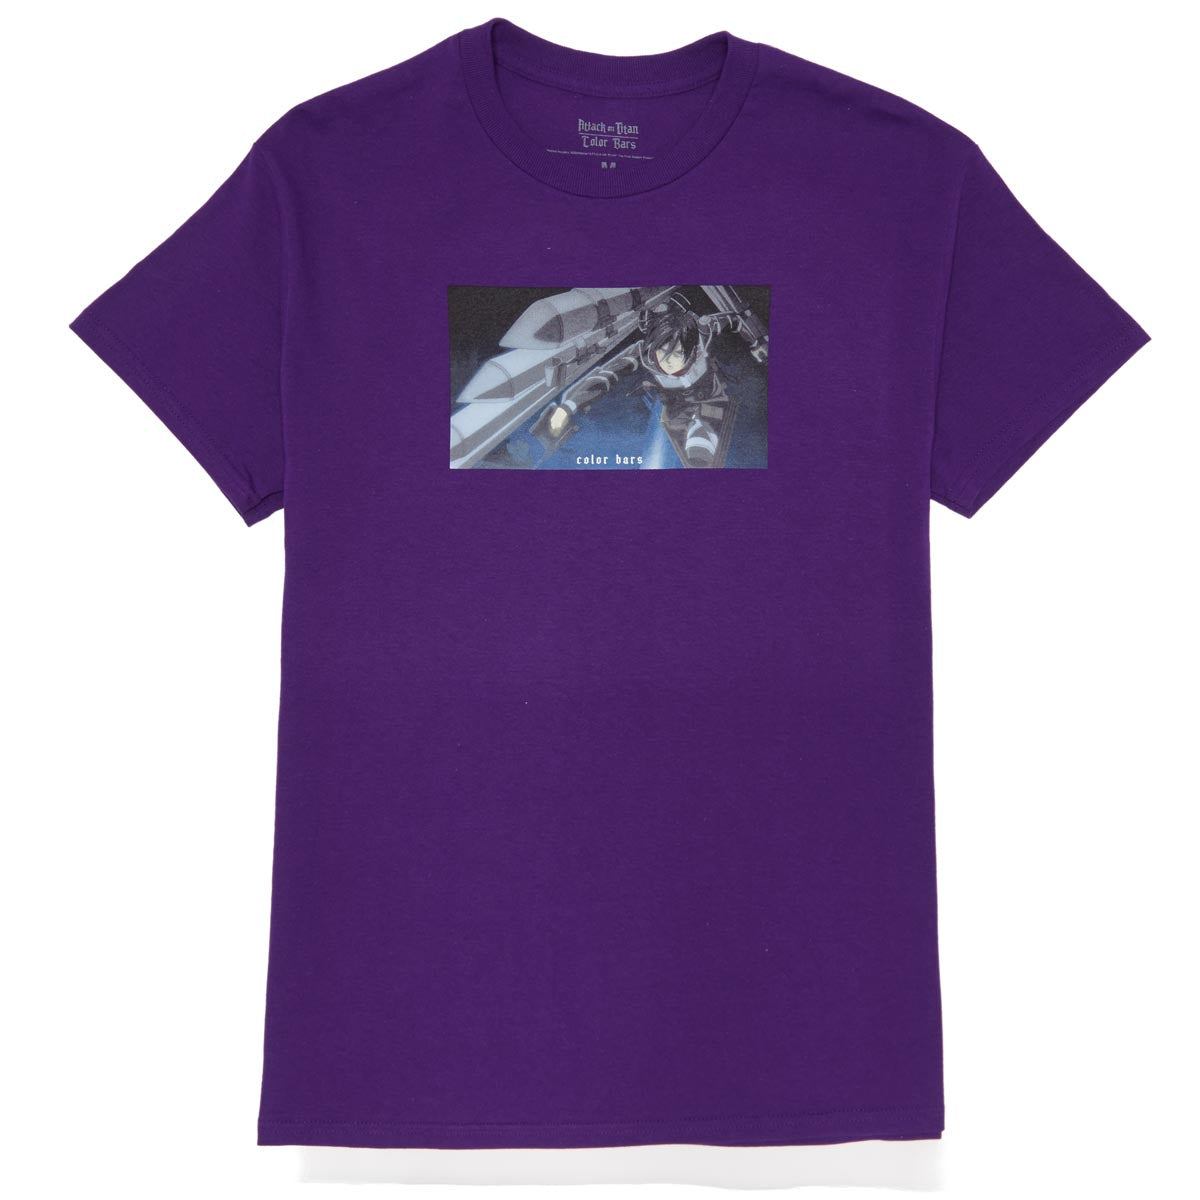 Color Bars x Attack on Titan Brigade T-Shirt - Purple image 1